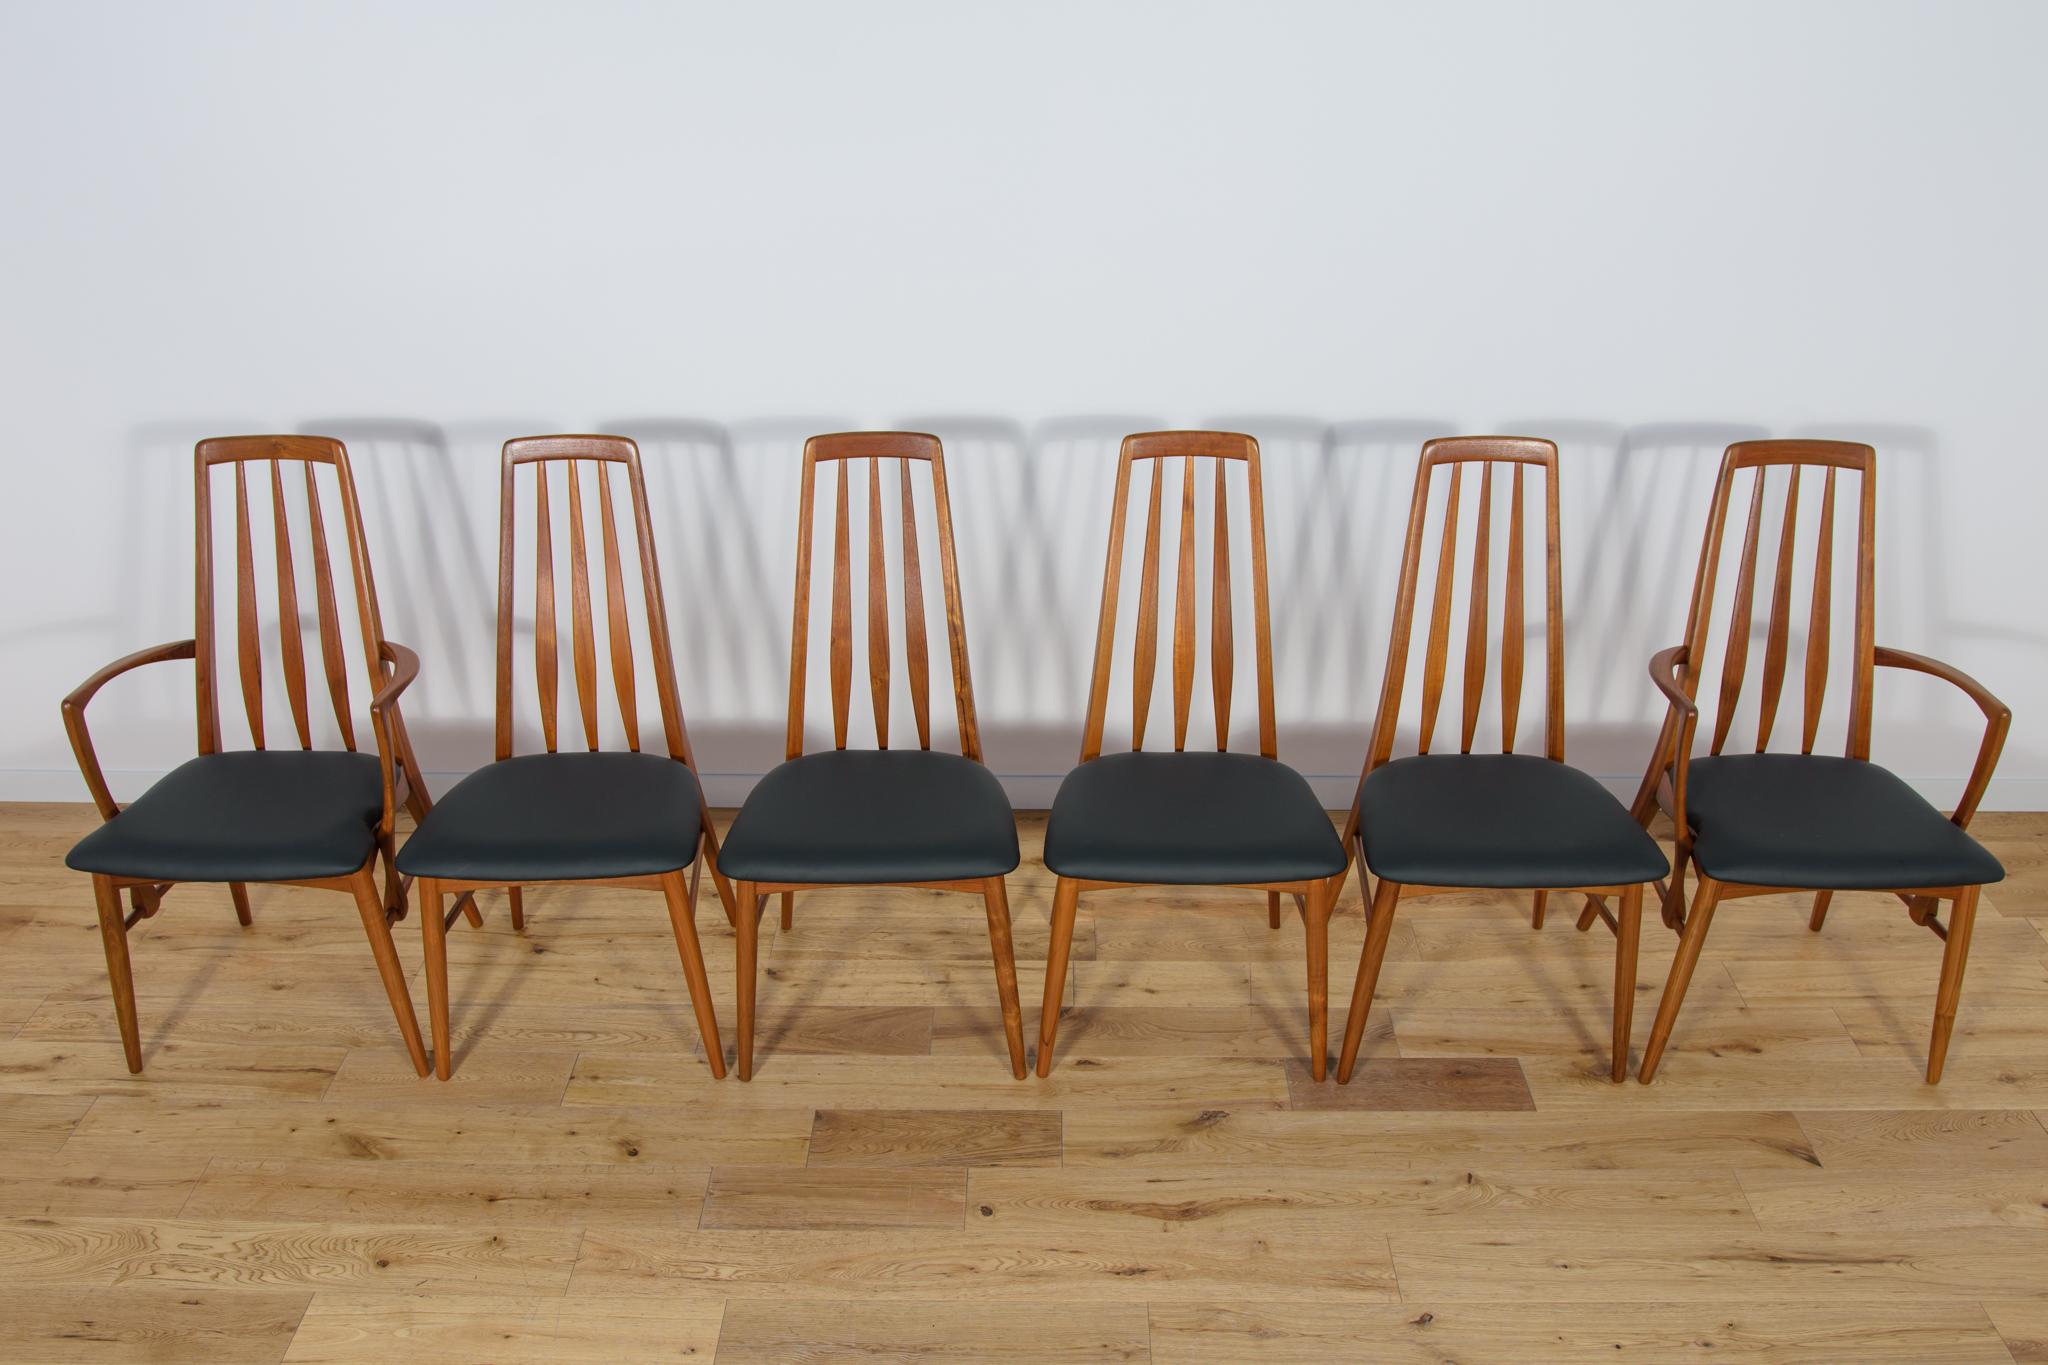 Dieses Set besteht aus vier Stühlen und zwei Sesseln. Der Eva-Stuhl wurde 1964 von Niels Koefoed entworfen und von Koefoeds Hornslet in Dänemark hergestellt. Die Rahmen sind aus massivem Teakholz gefertigt. Teakholz-Elemente von der alten Oberfläche